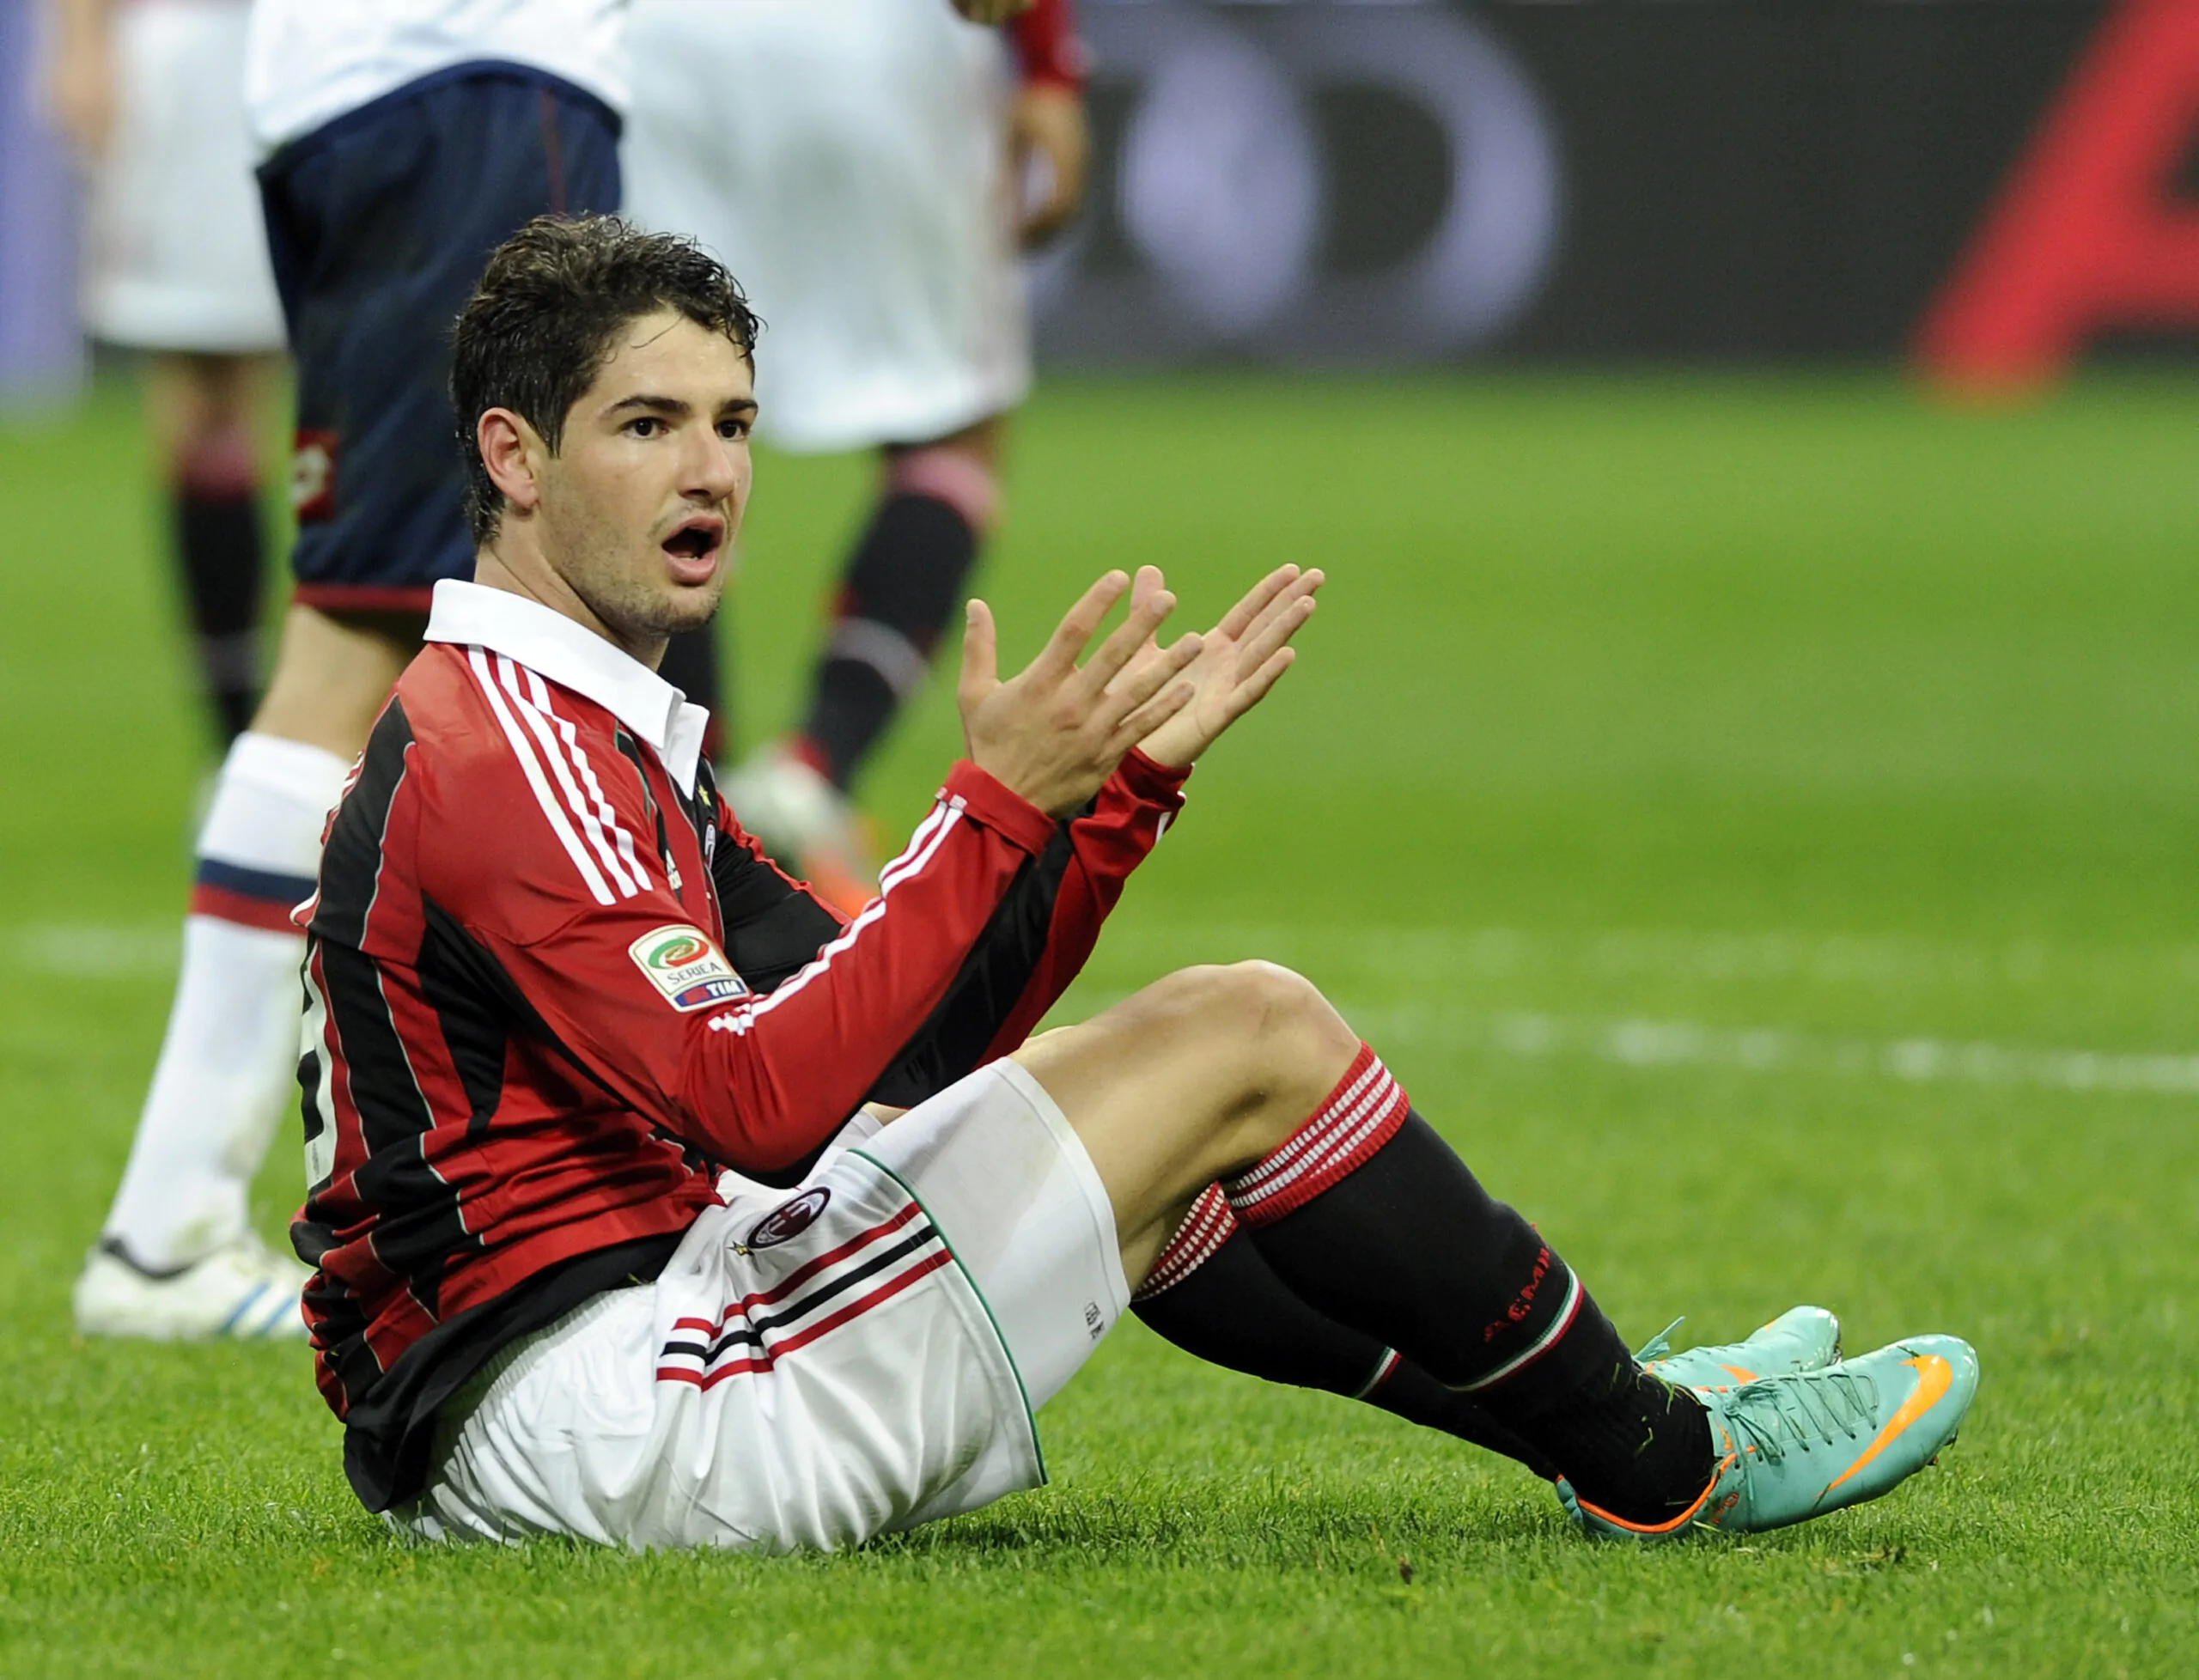 Emozionante Pato: “Vi svelo qual è stato il momento più bello al Milan”